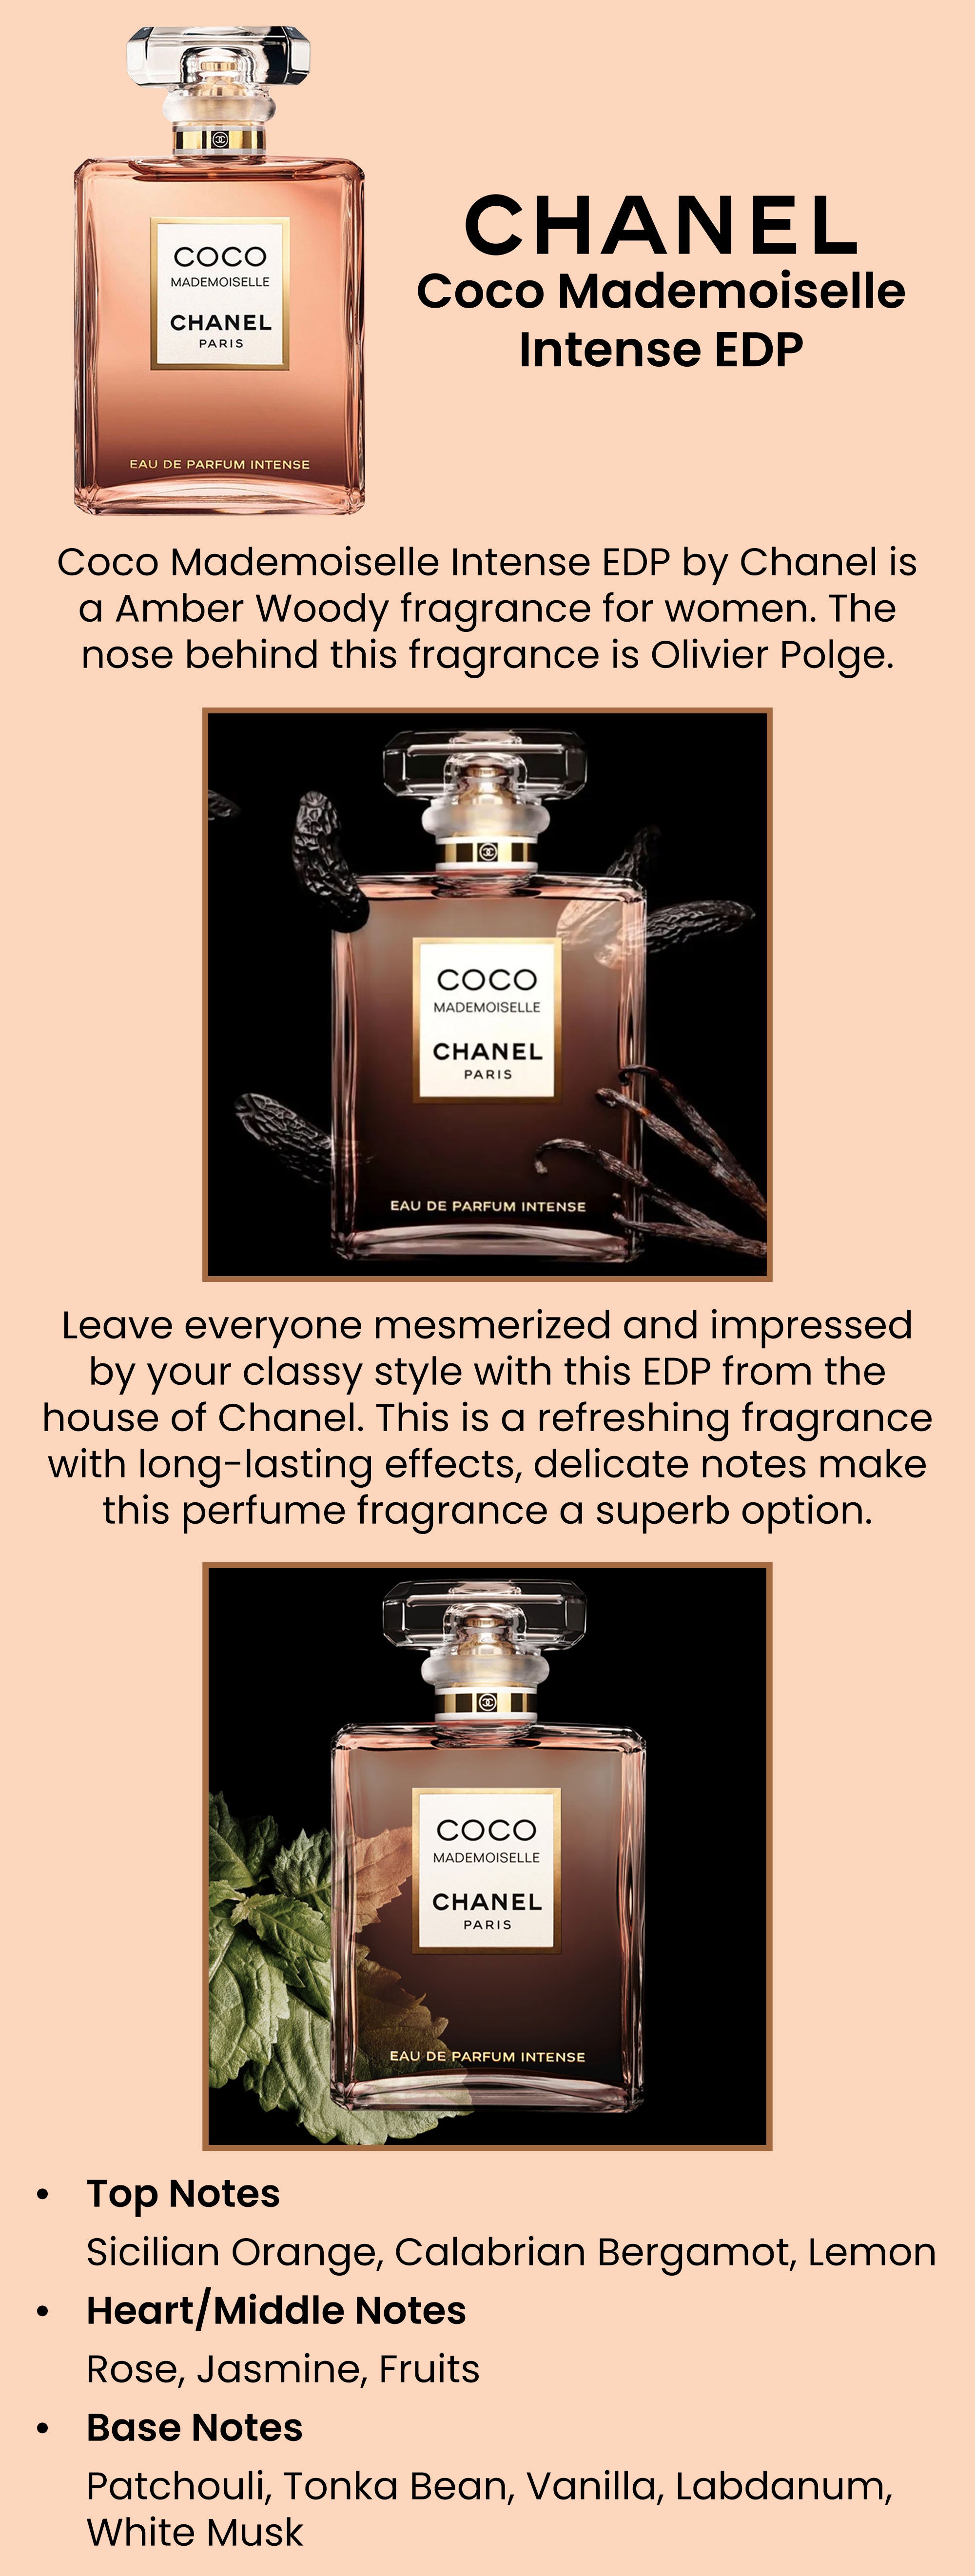 Chanel-Coco-Mademoiselle-Intense-Eau-de-Parfum